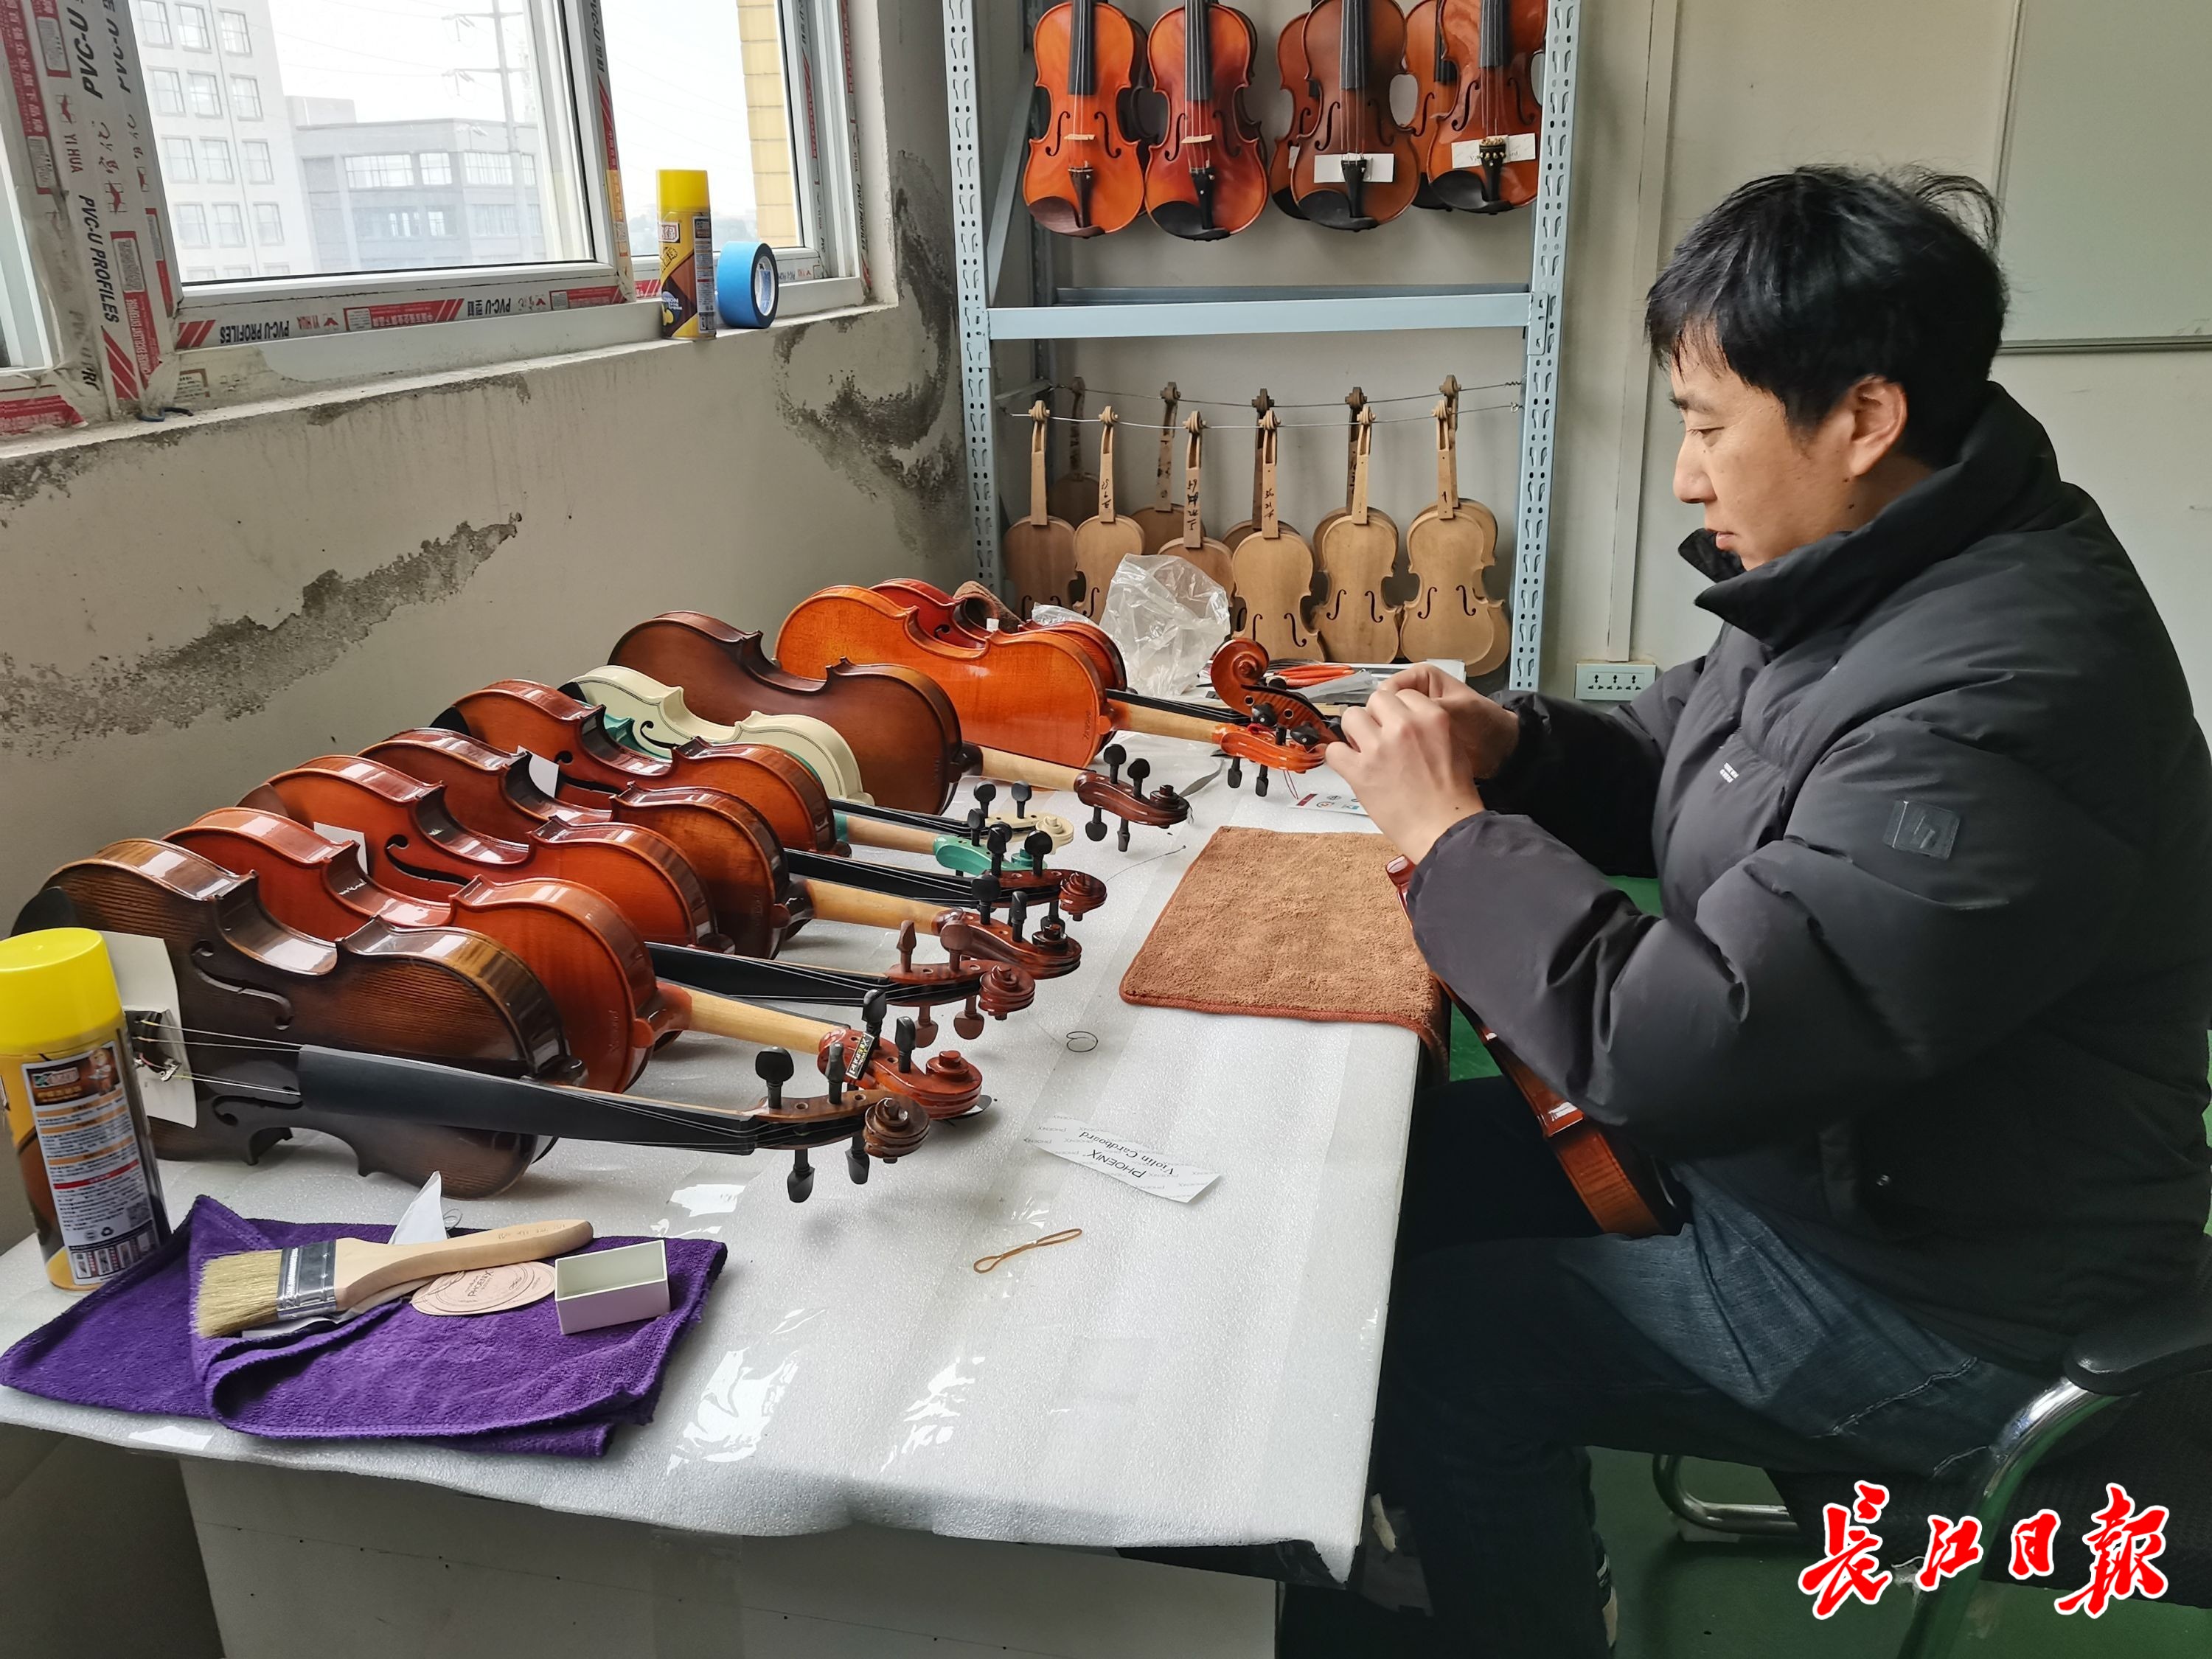 一把琴要刷48遍漆，武汉手工制作的小提琴远销海外